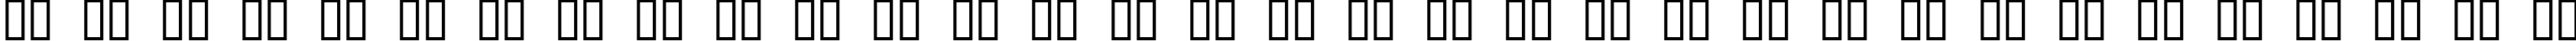 Пример написания русского алфавита шрифтом ACID LABEL___